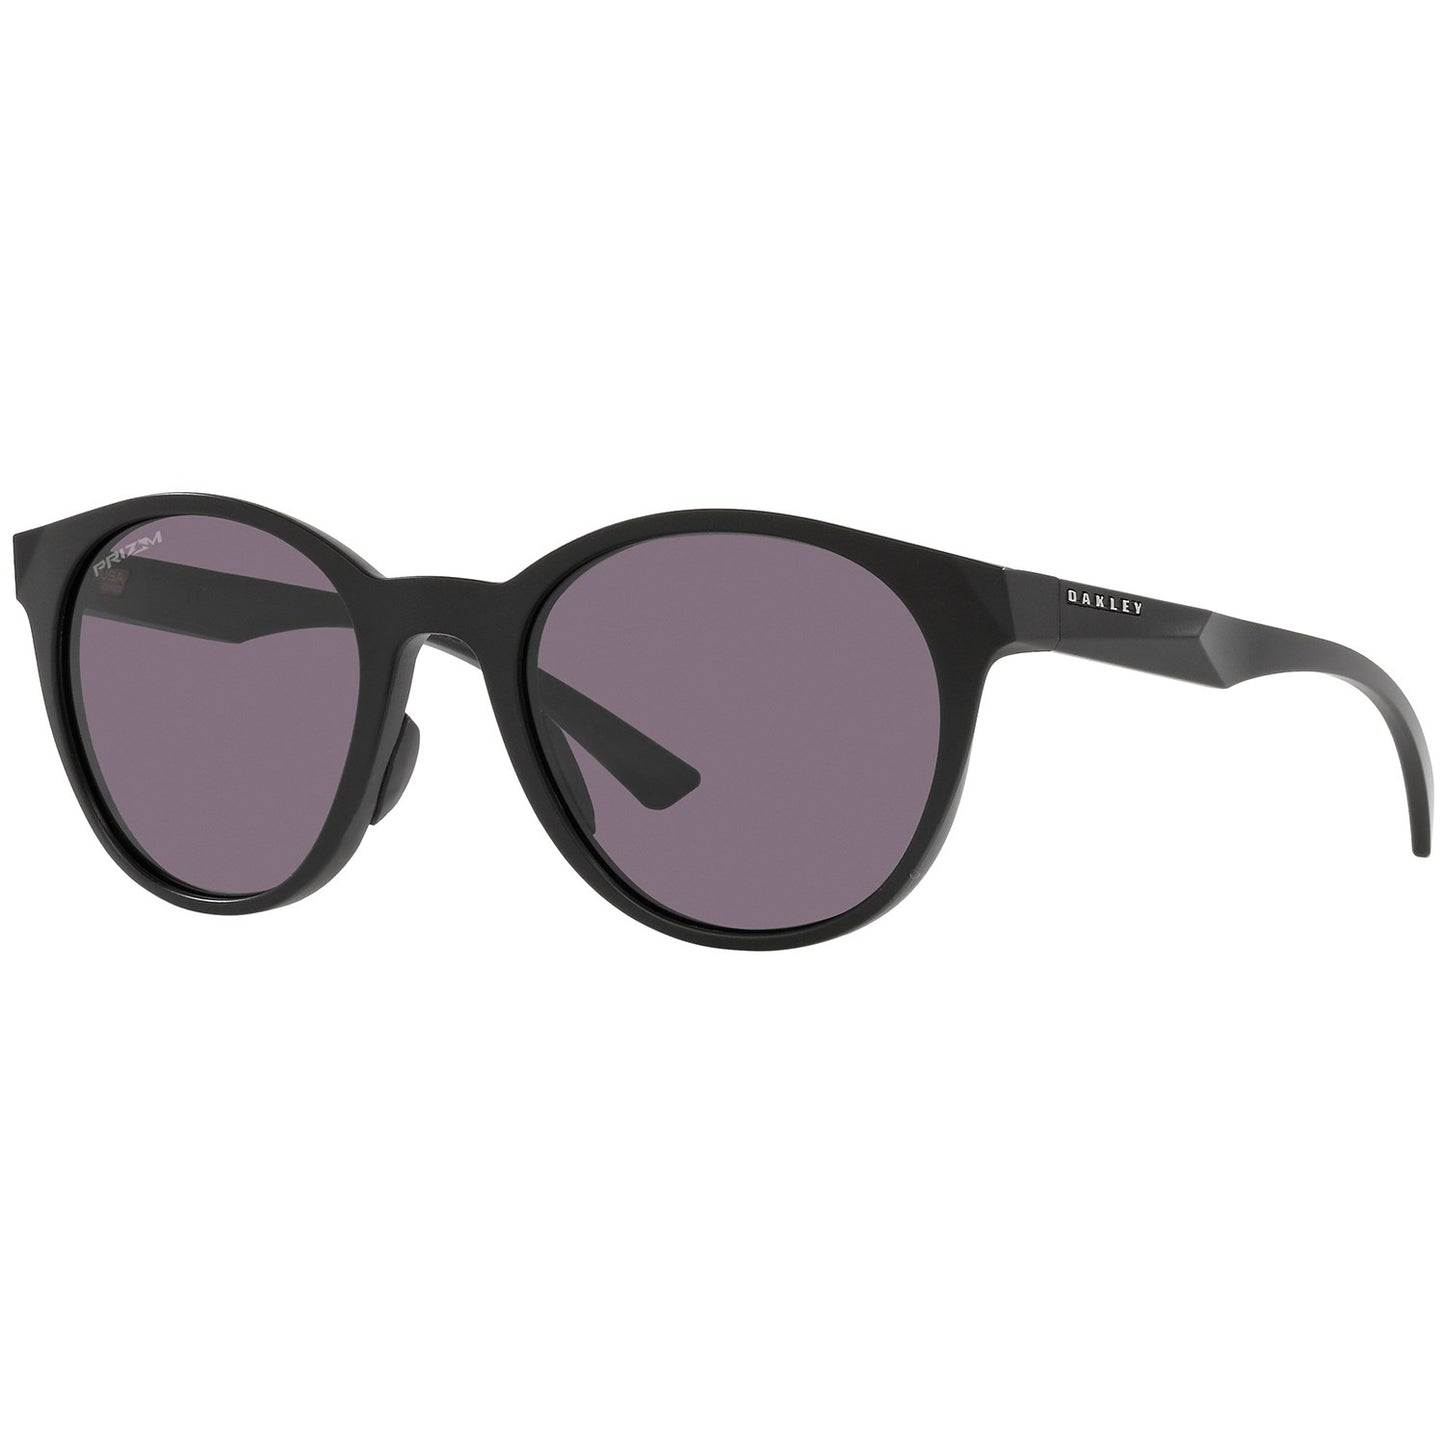 Oakley Spindrift Sunglasses - Women's